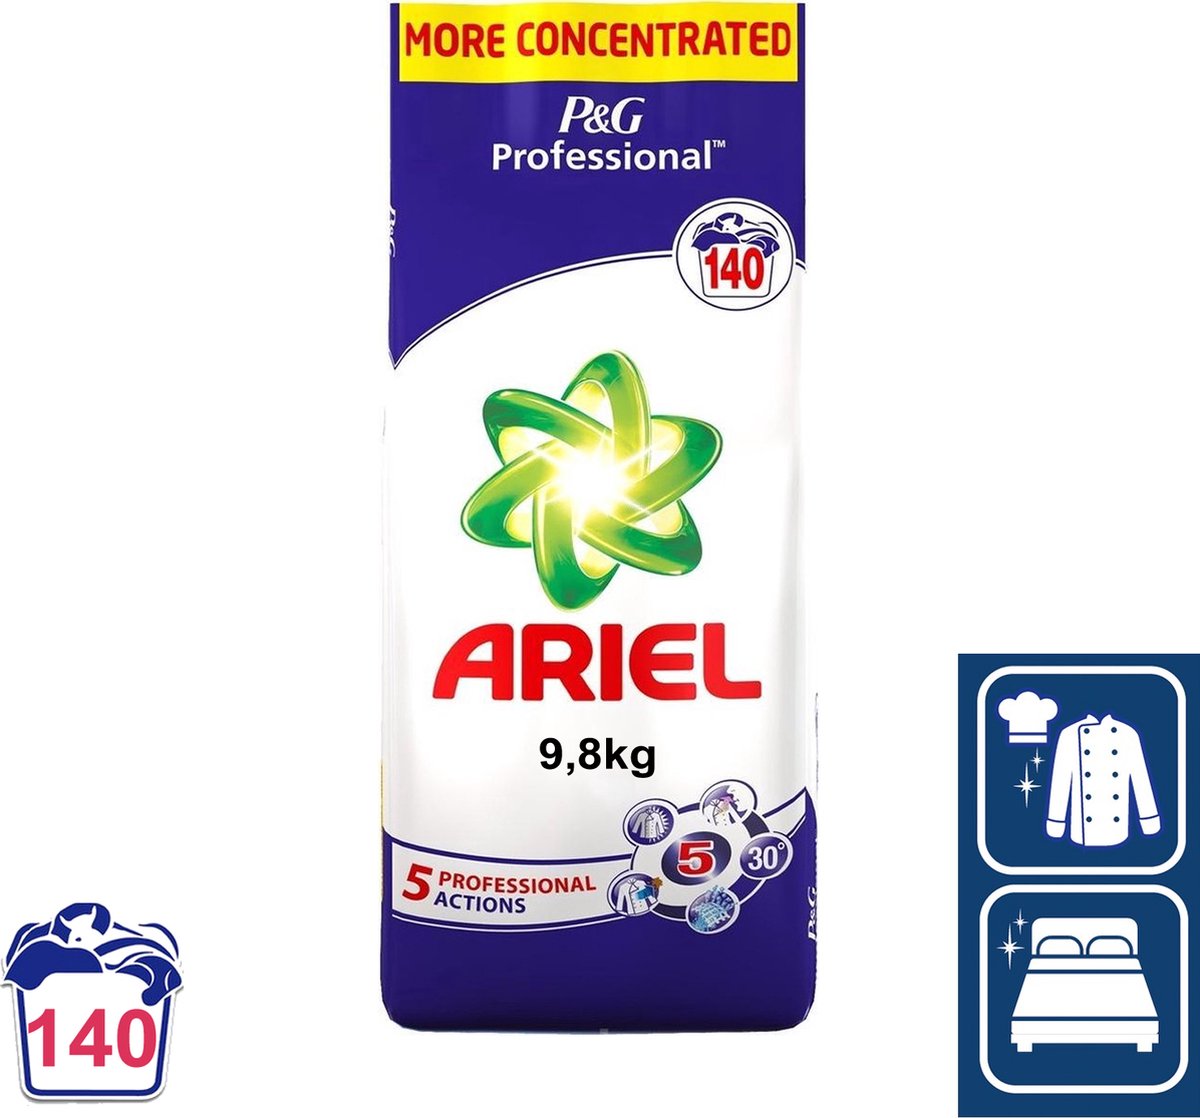 Lessive capsules Ariel Professionnel All in 1 Ultra détachant, sachet de 60  - Lessive en dosettes